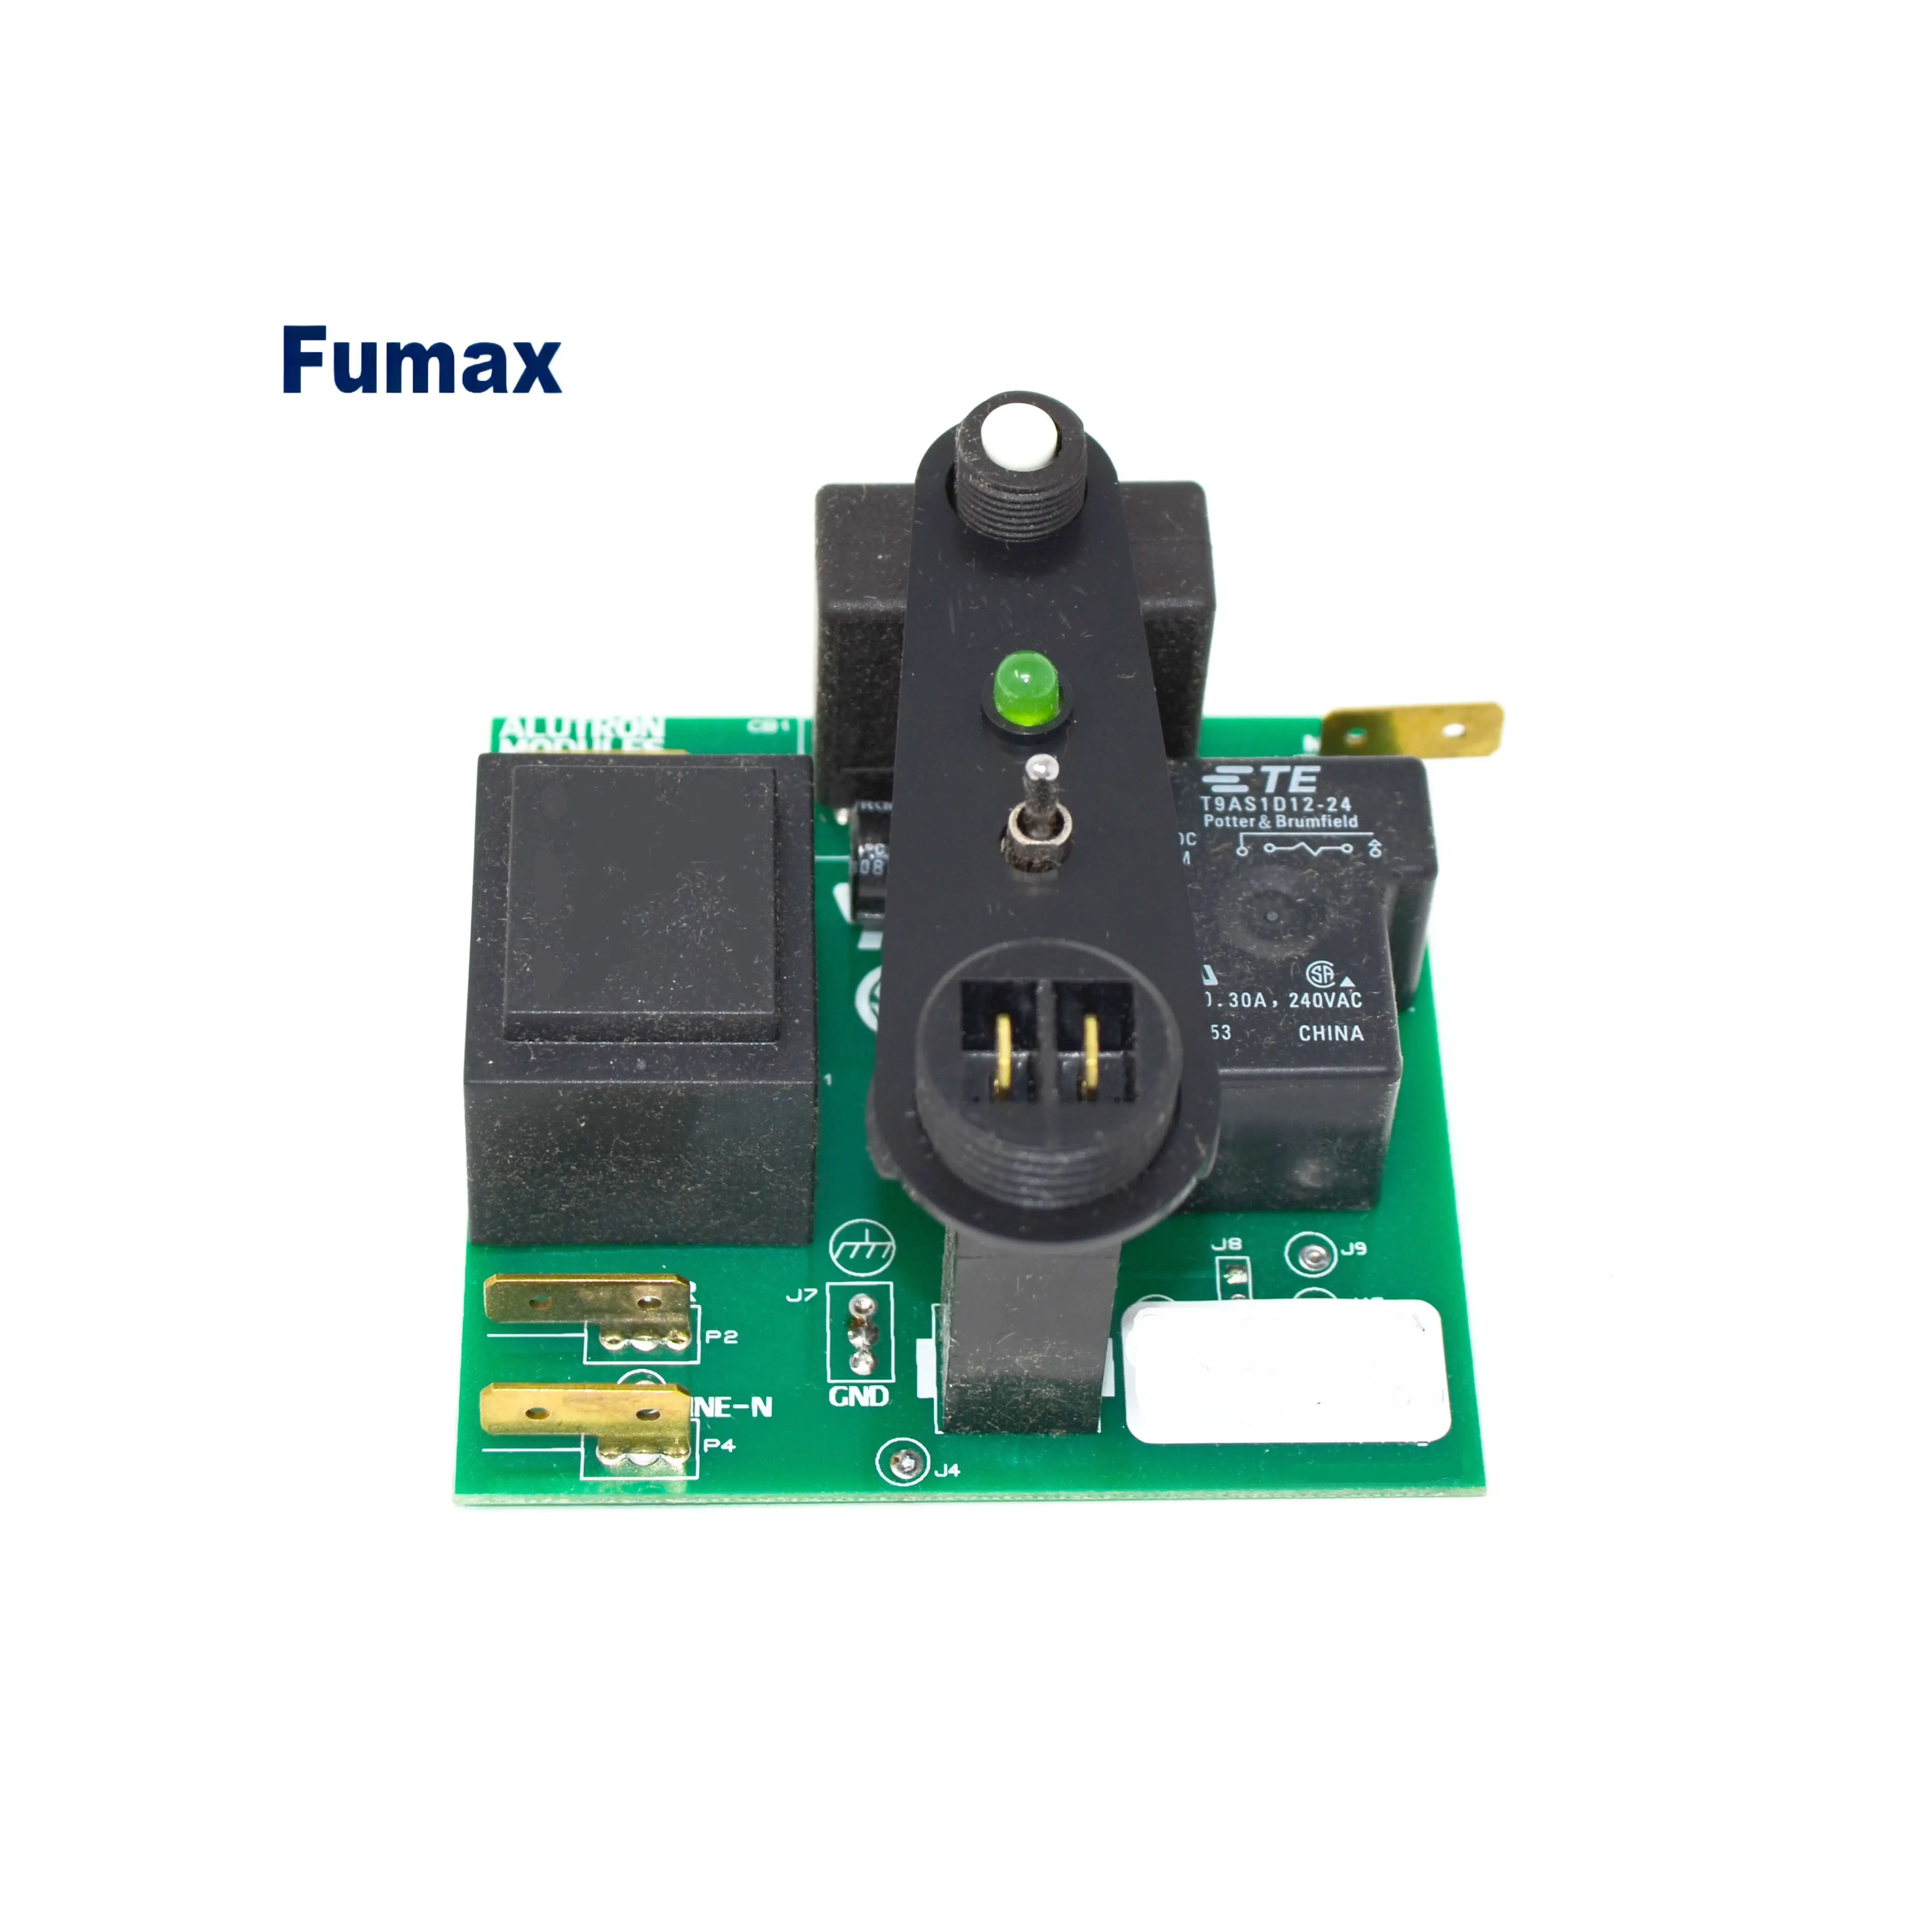 Fumax multistrato cctv pcb personalizzato oem produttore di schede personalizzate circuito OEM carrier manufacturing device